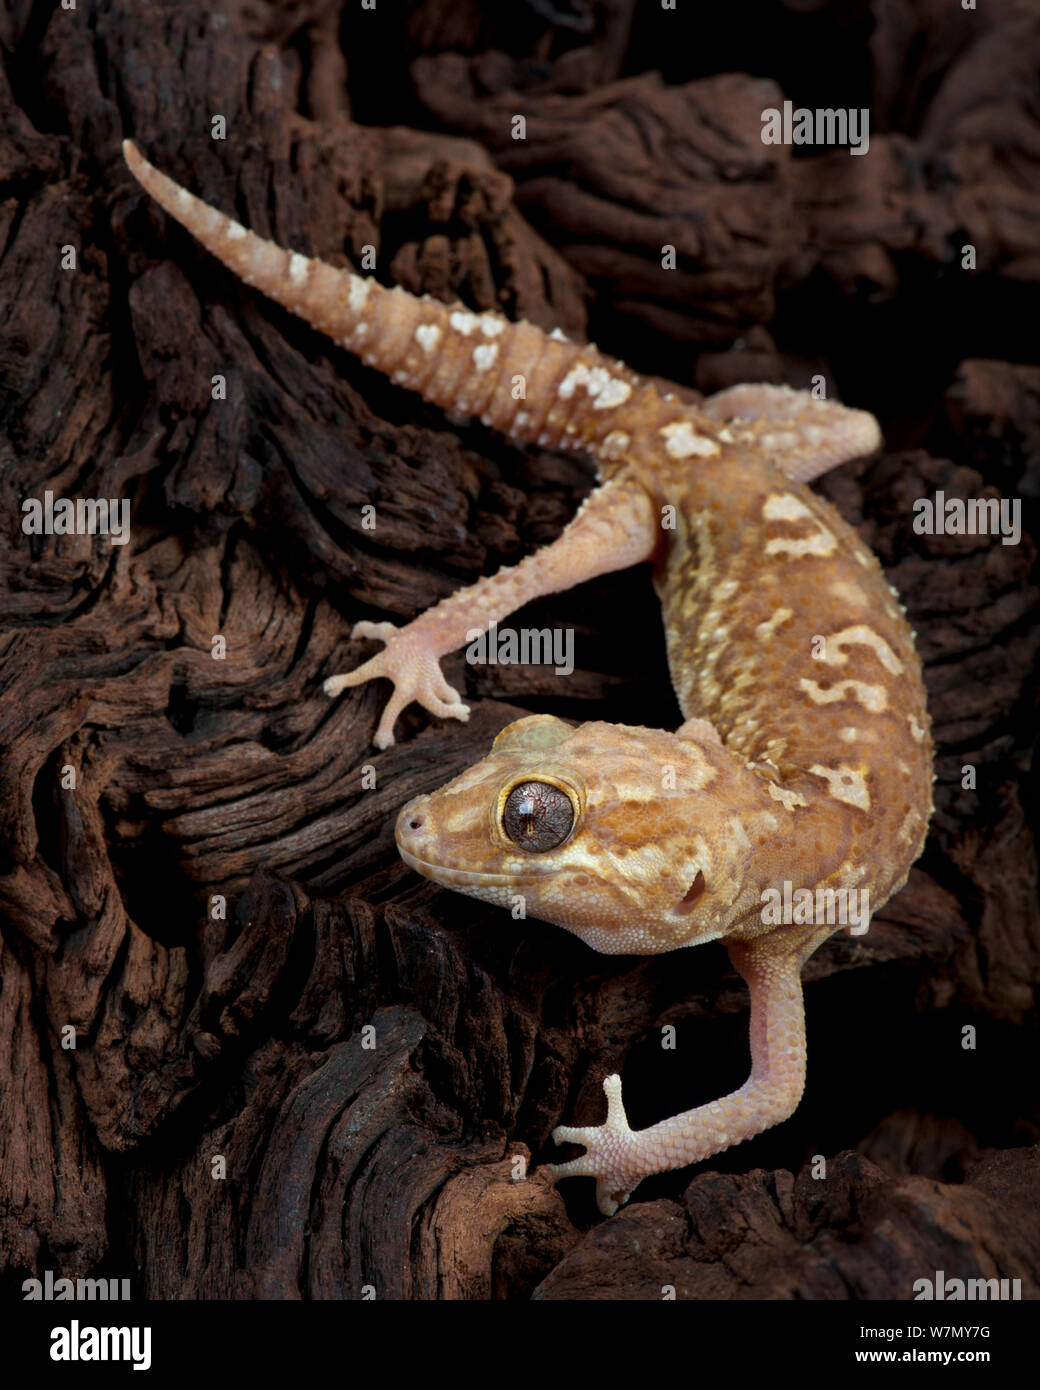 Madagascar gecko terrestre / Big dirigé(Paroedura pictus) gecko, captive de Madagascar Banque D'Images